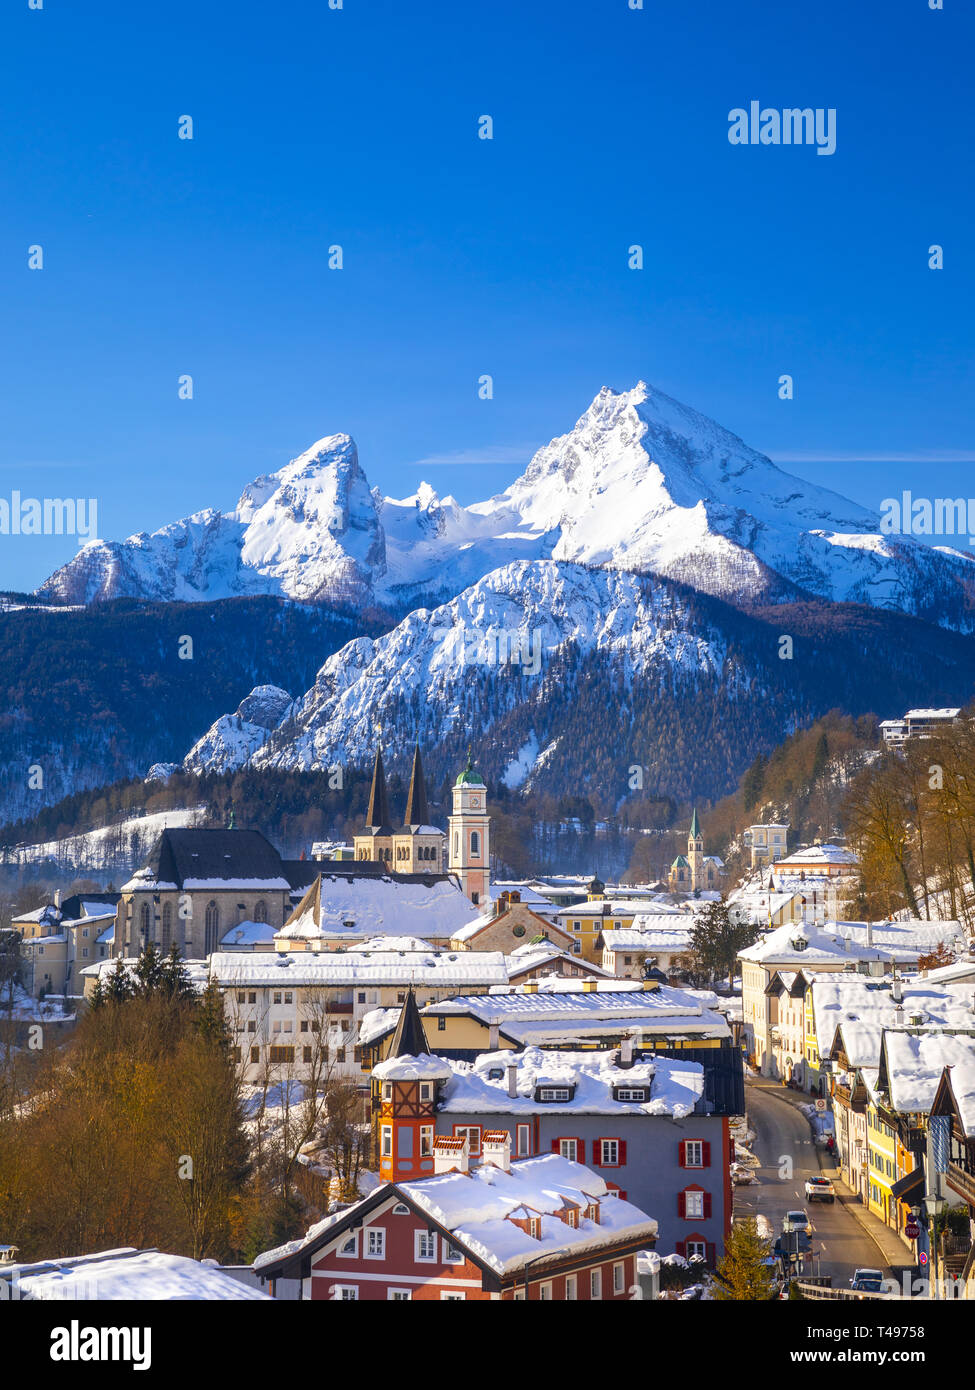 Storica città di Berchtesgaden con il famoso monte Watzmann in background, parco nazionale Berchtesgadener, Alta Baviera, Germania Foto Stock